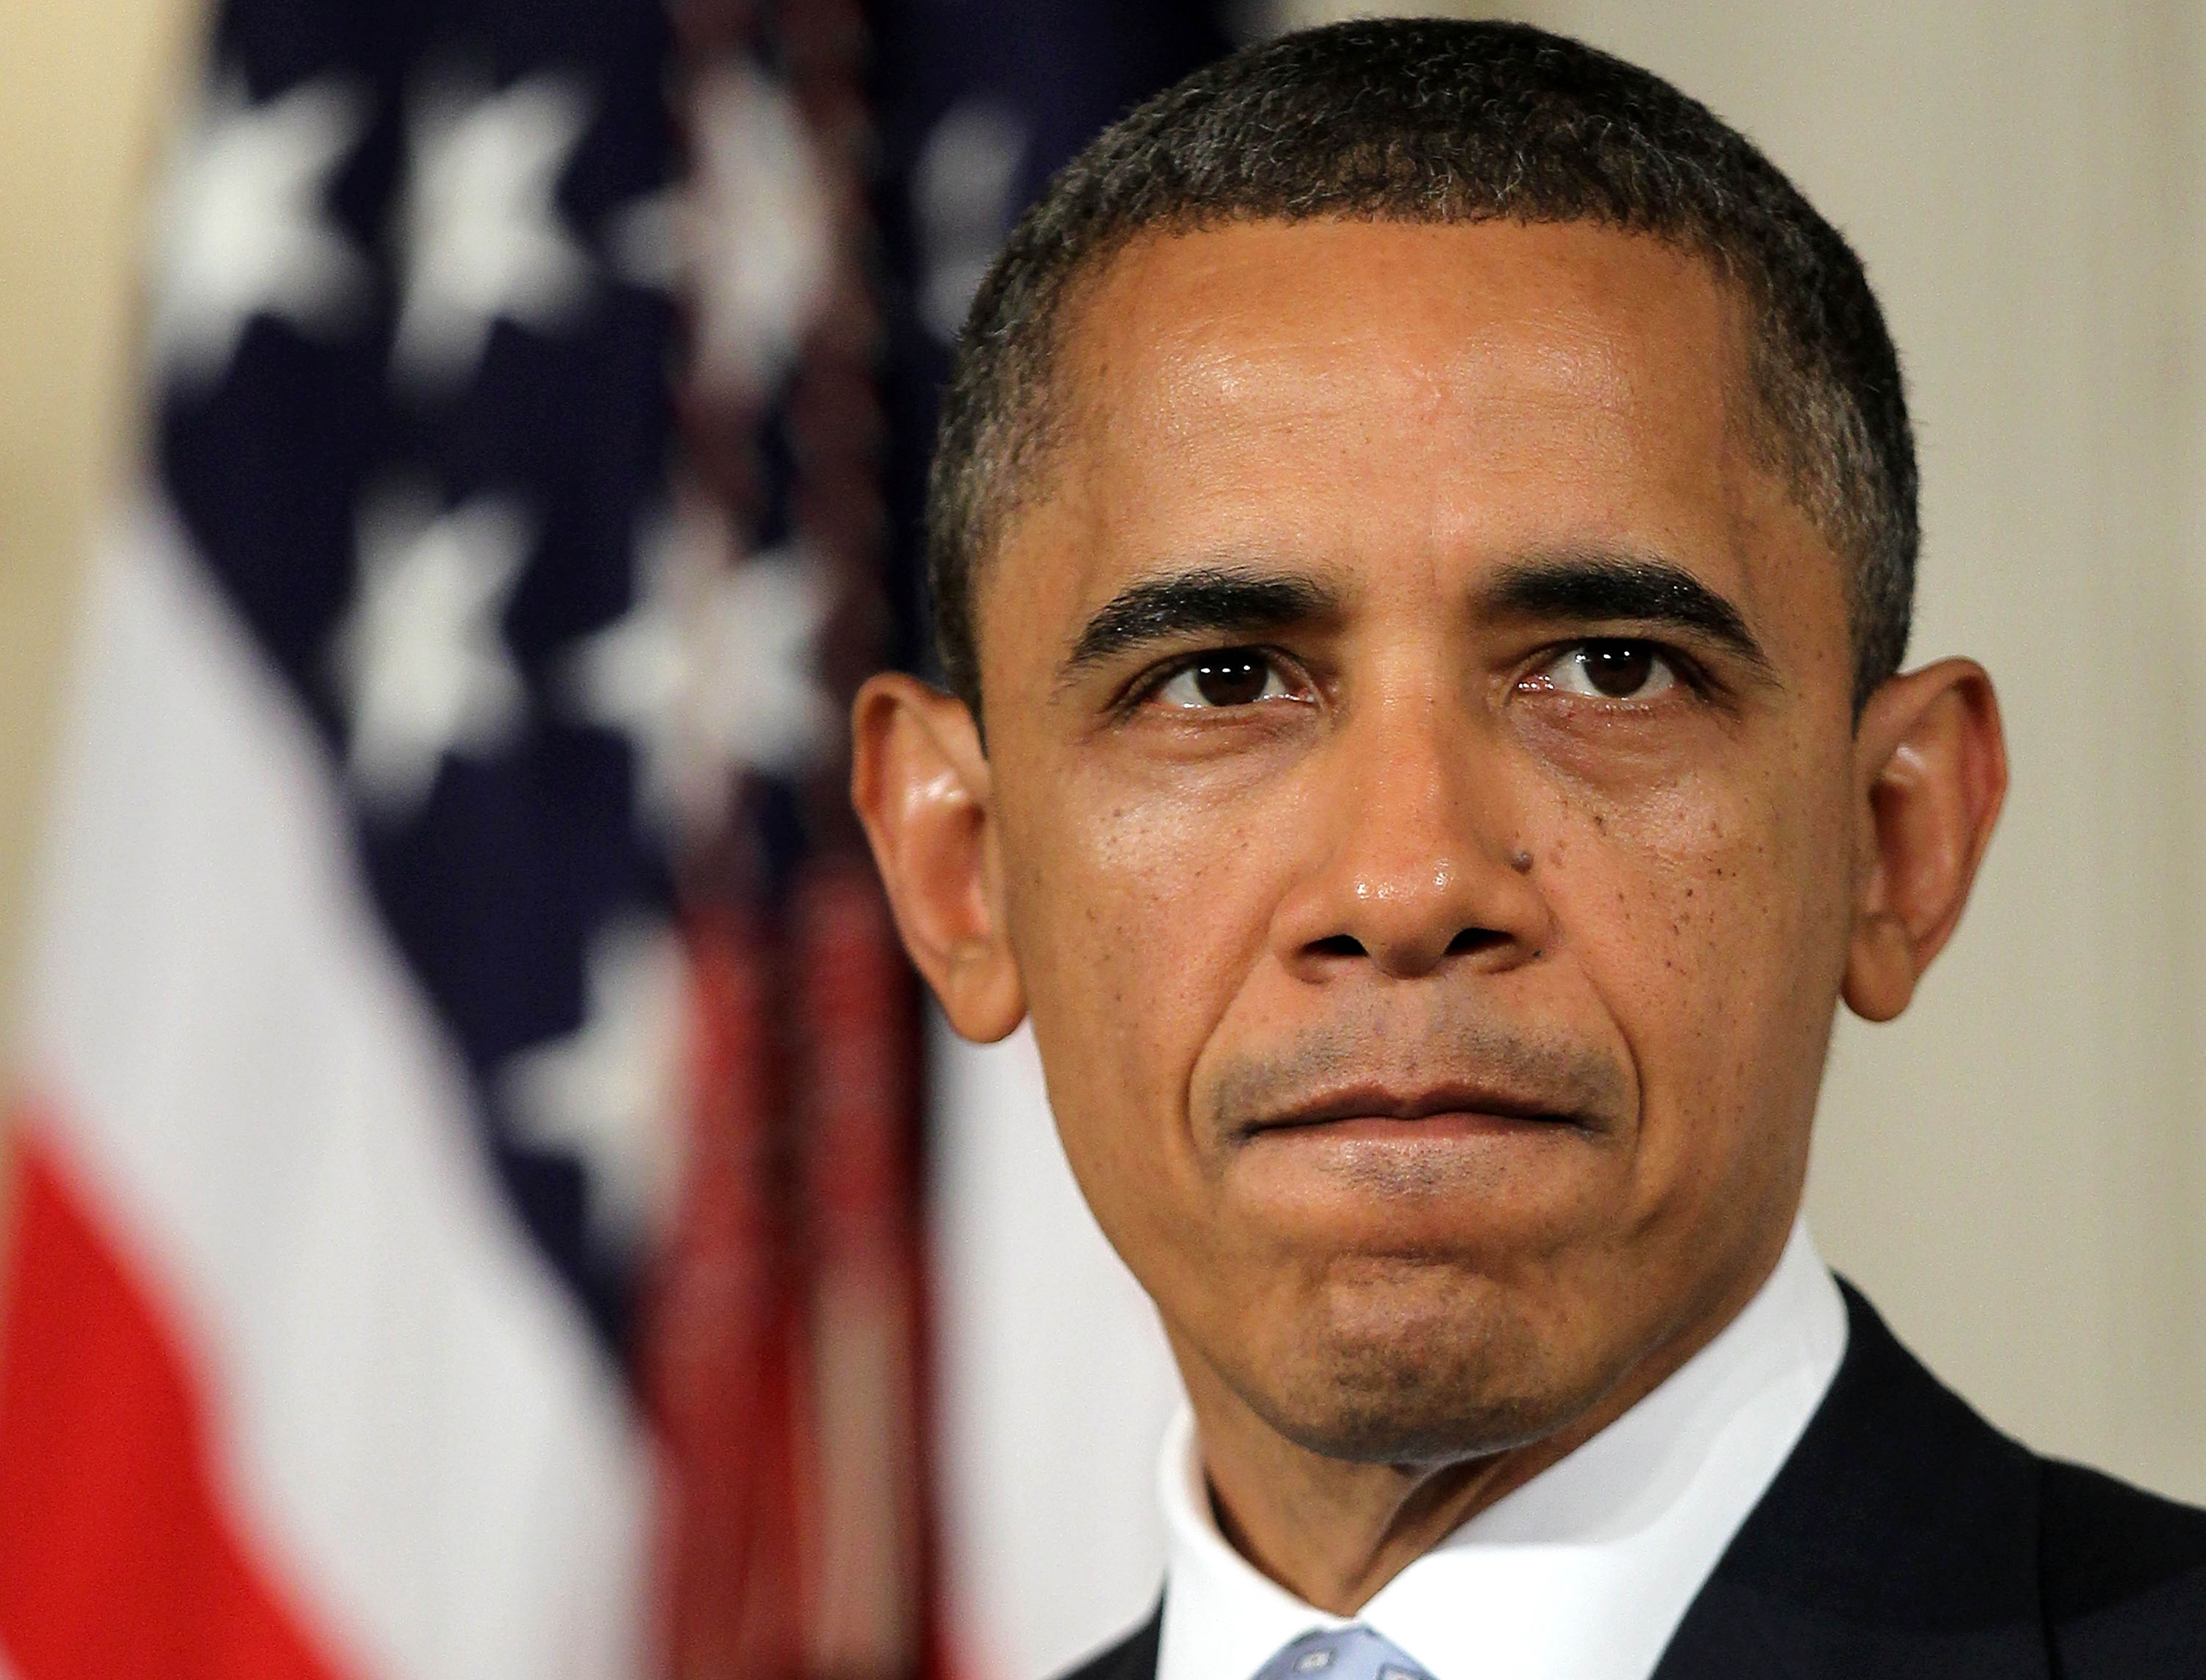 Obama: “Lo sviluppo e’ una priorita’ onorero’ le promesse con l’Africa”